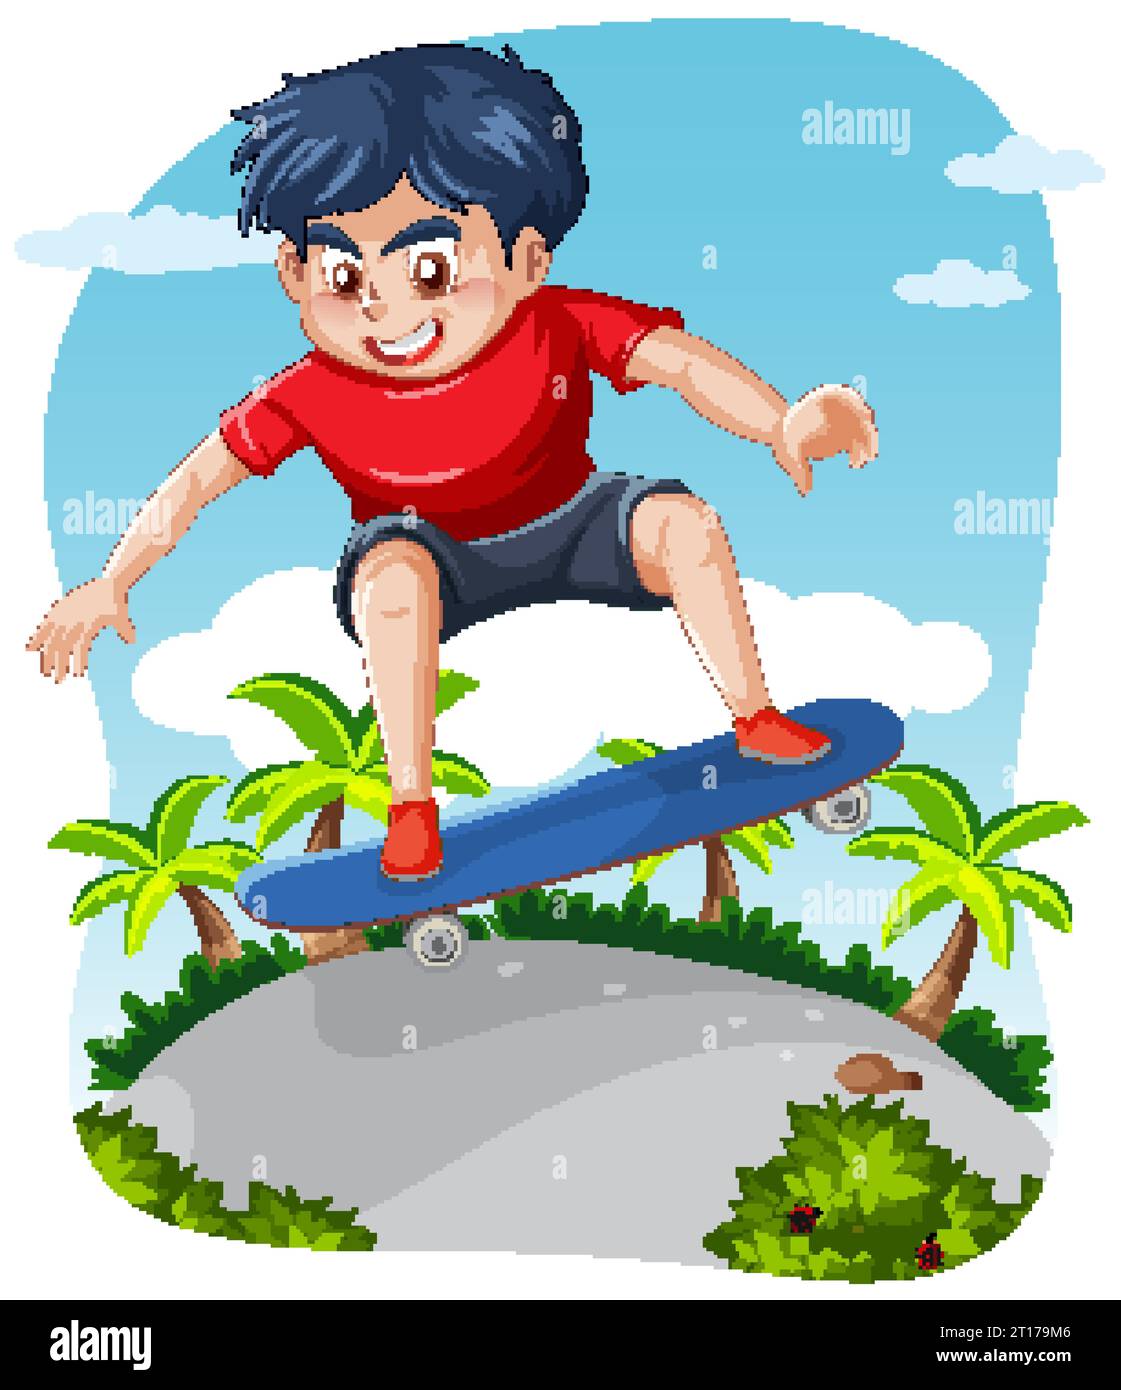 Ein männlicher Jugendlicher, der Skateboard in einer Fischaugenlinse-Zeichentrickillustration spielt Stock Vektor